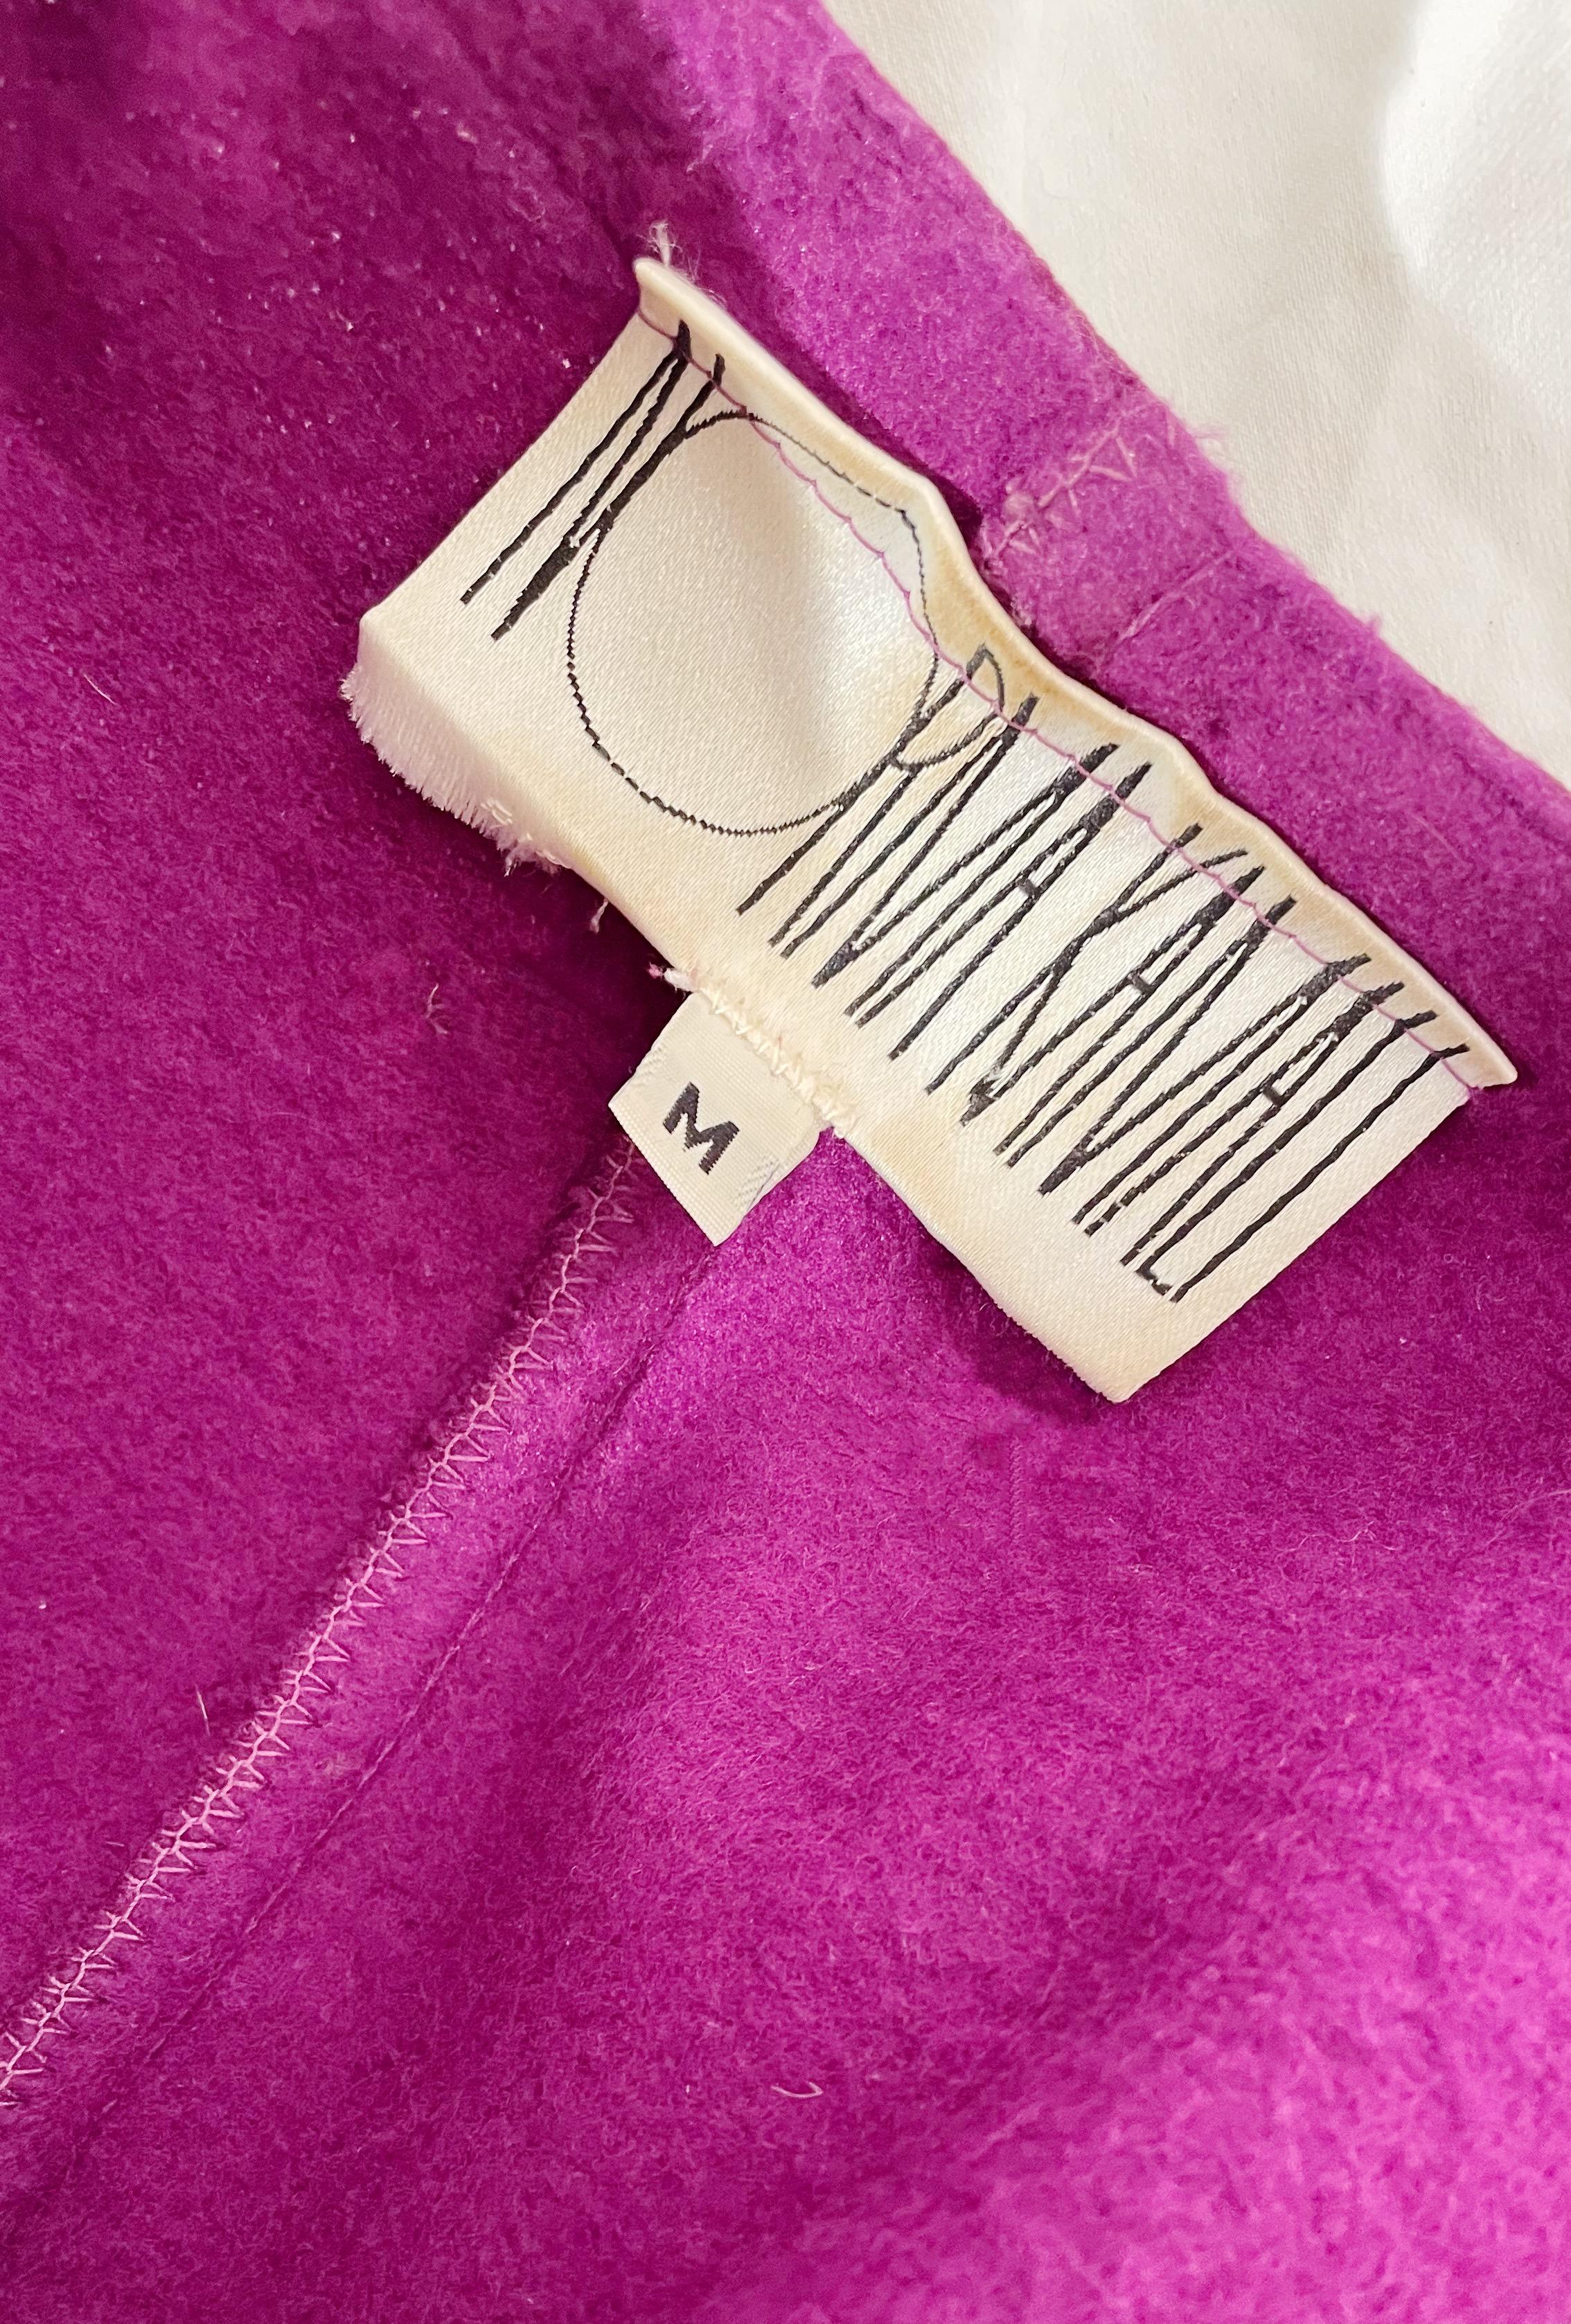 Women's Norma Kamali Purple Sweatshirt Blouse  For Sale